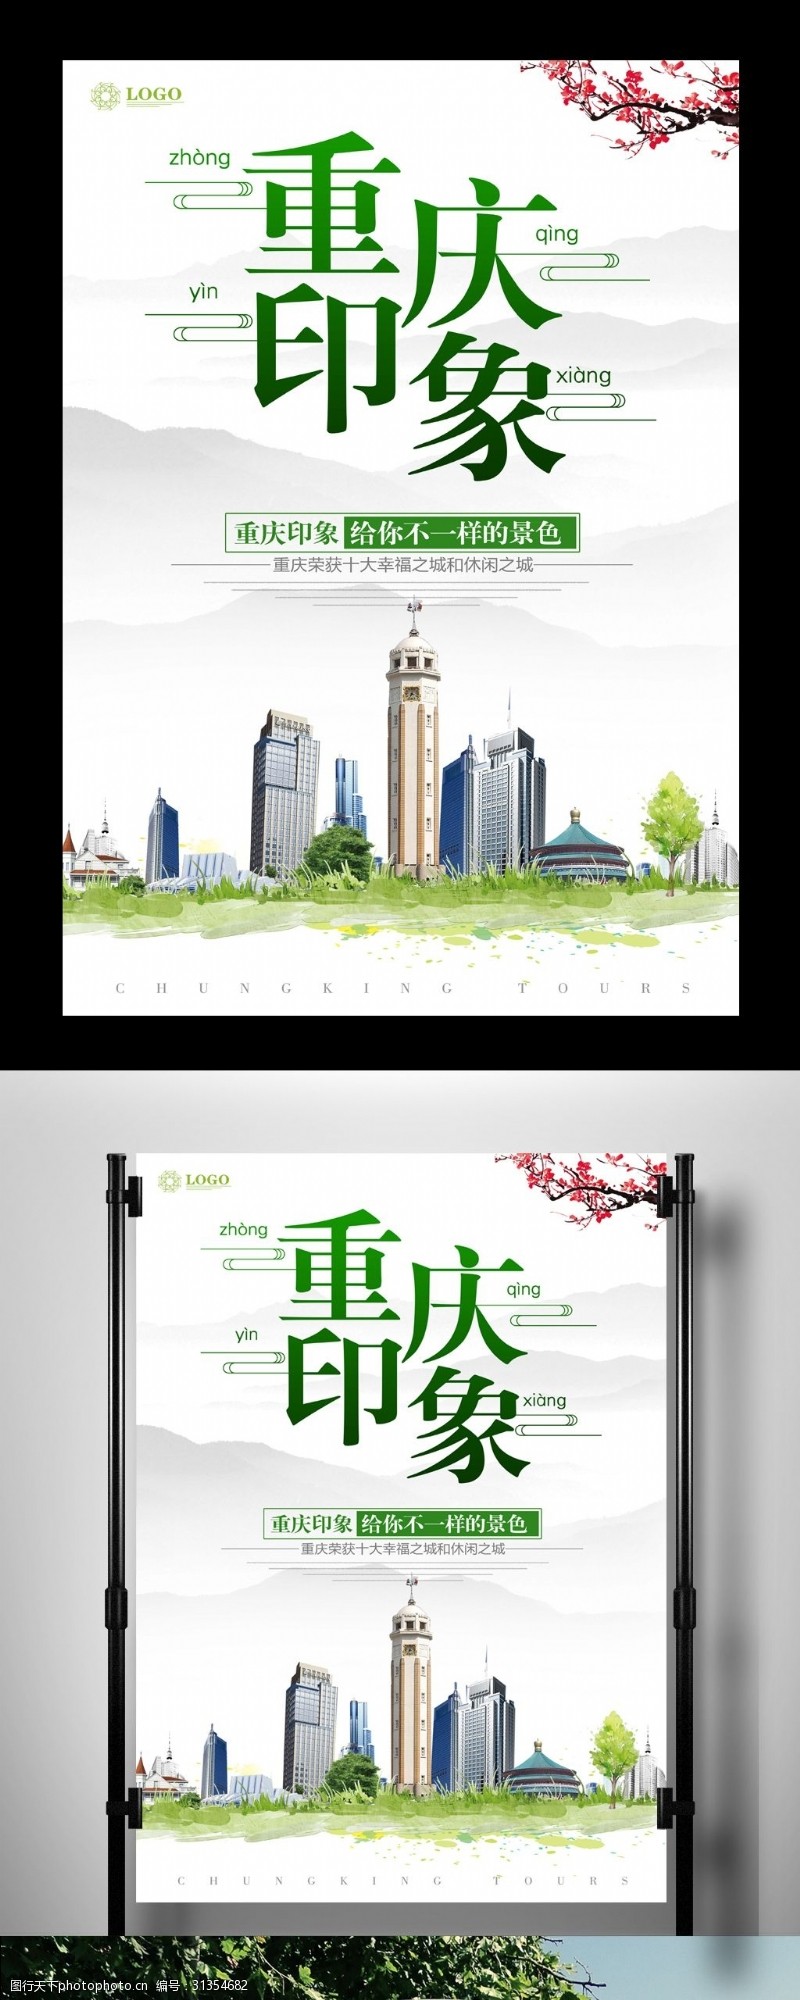 重庆旅游海报重庆印象旅游宣传海报